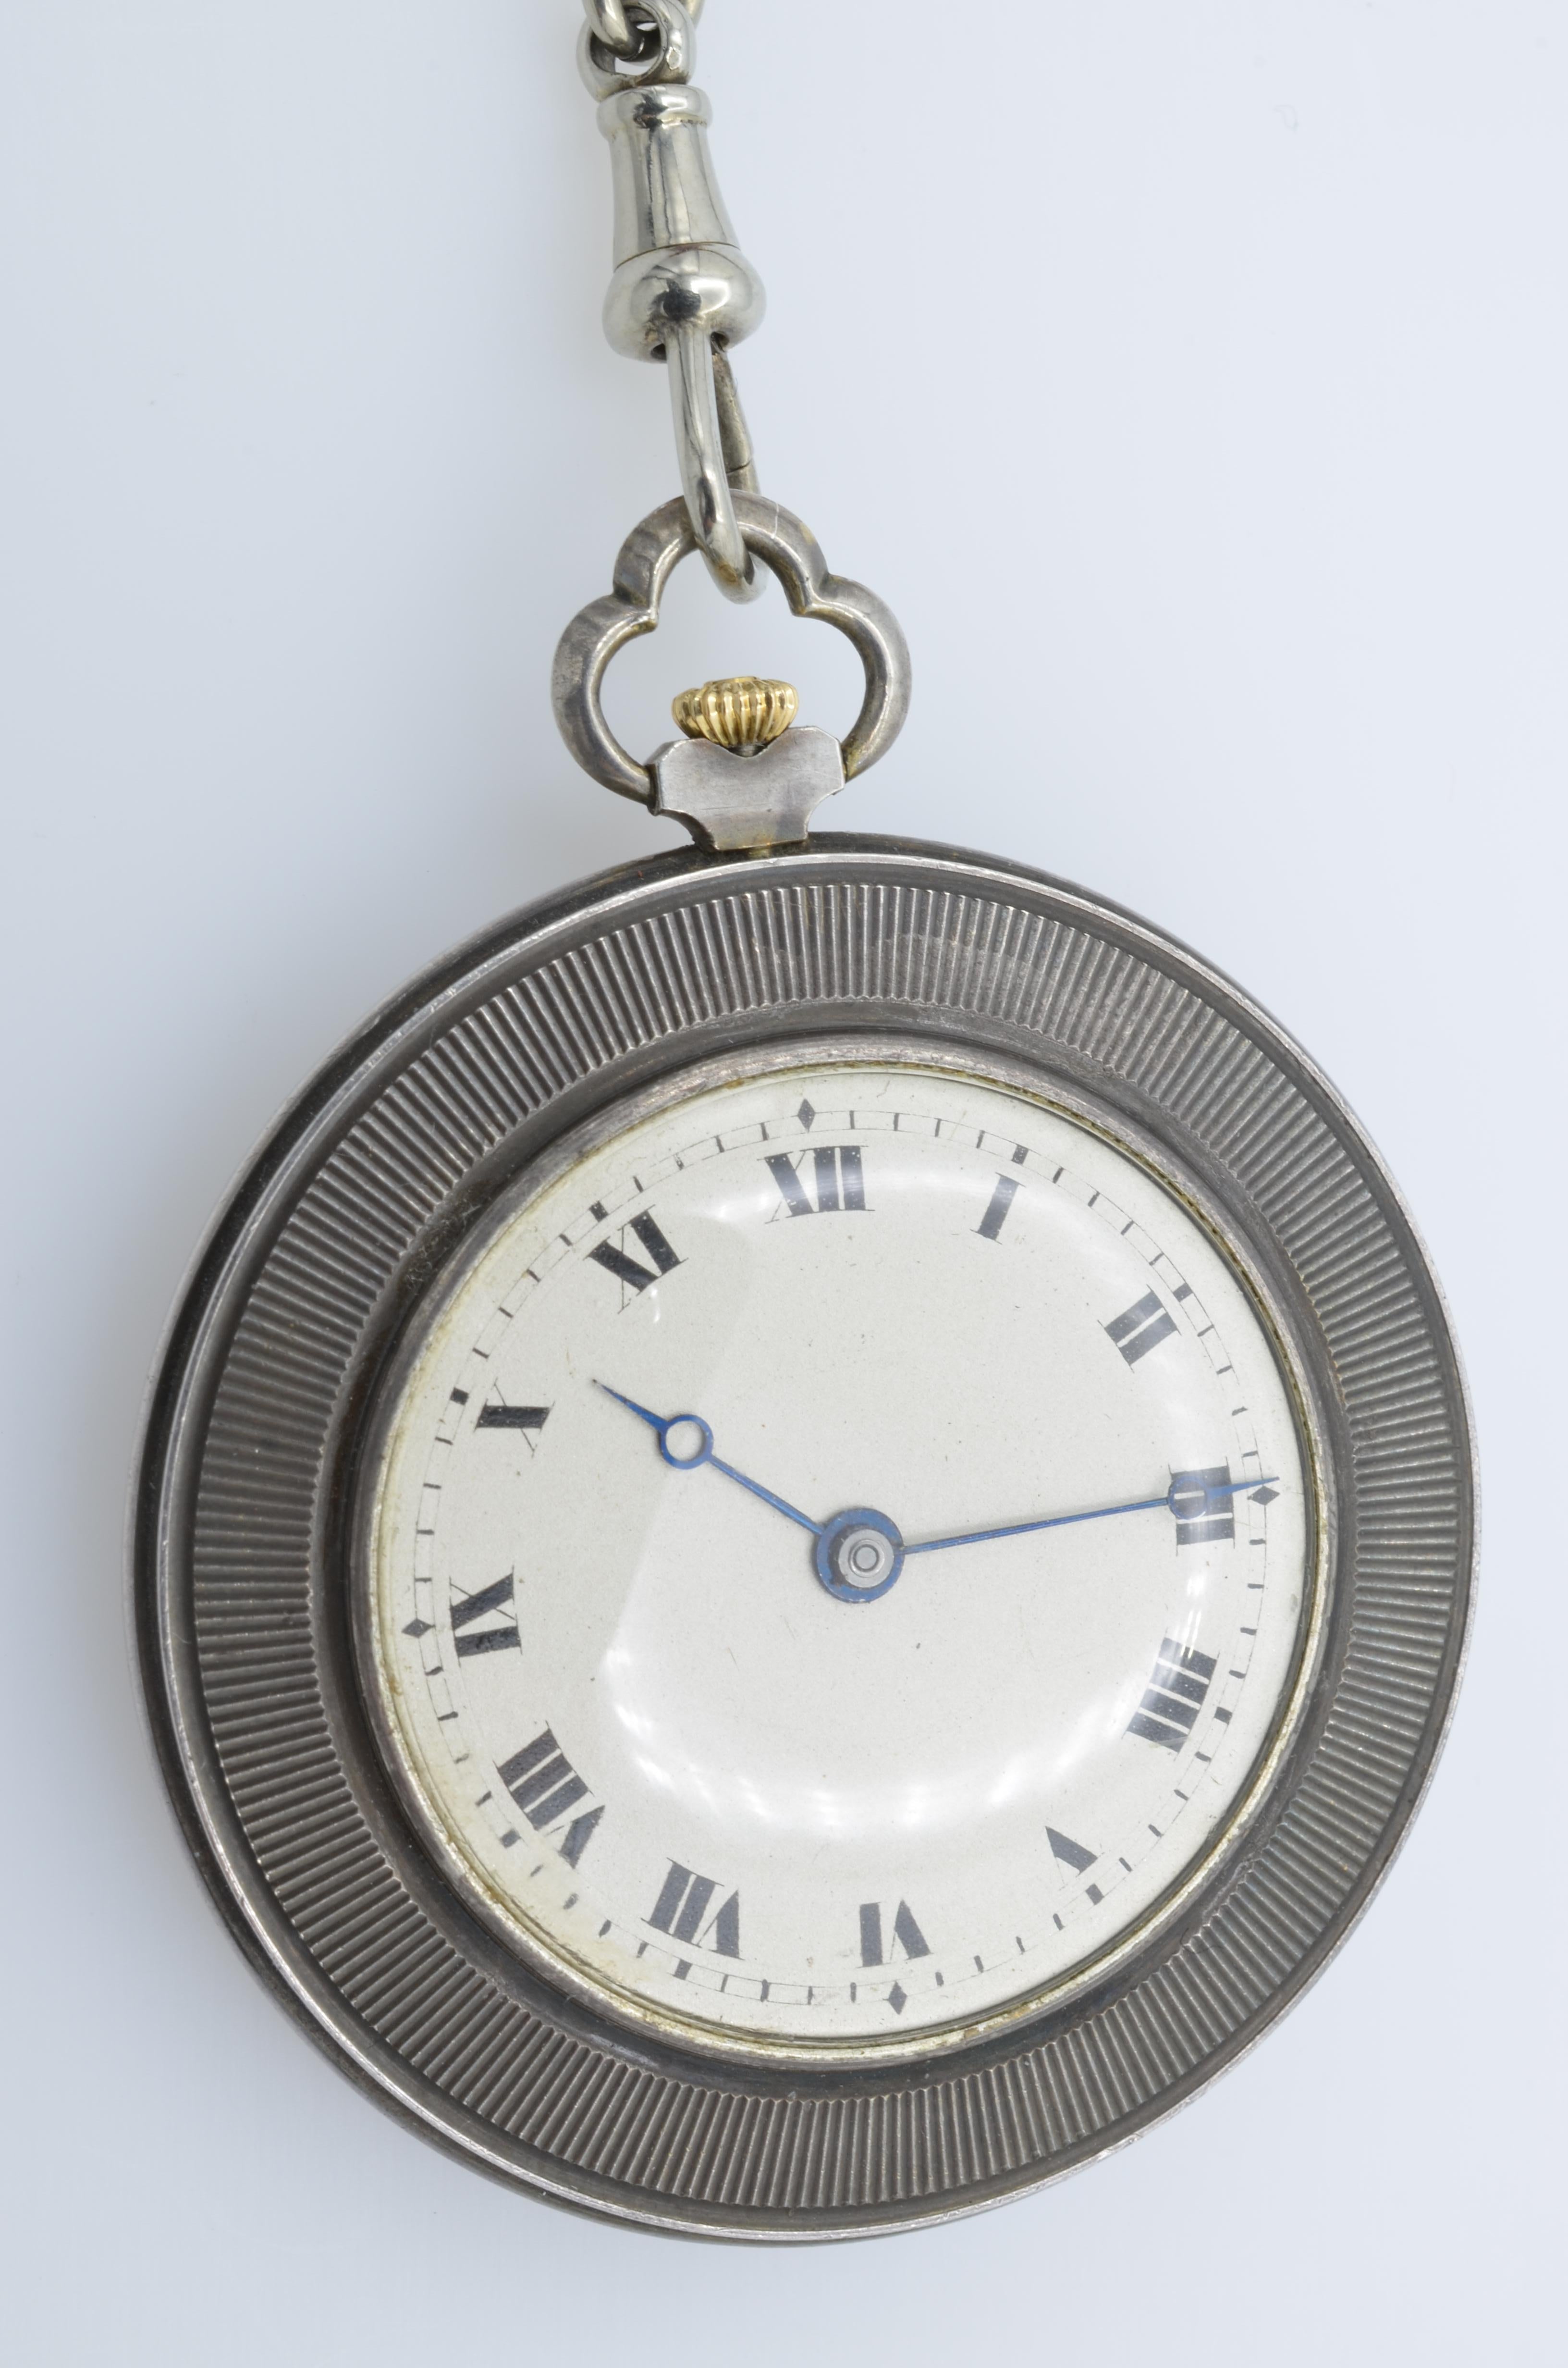 Schöne und schicke Taschenuhr mit dem Bildnis von HRH Duke of Wellington, das Datum ist um 1930. Die Uhr hat eine sehr schöne 